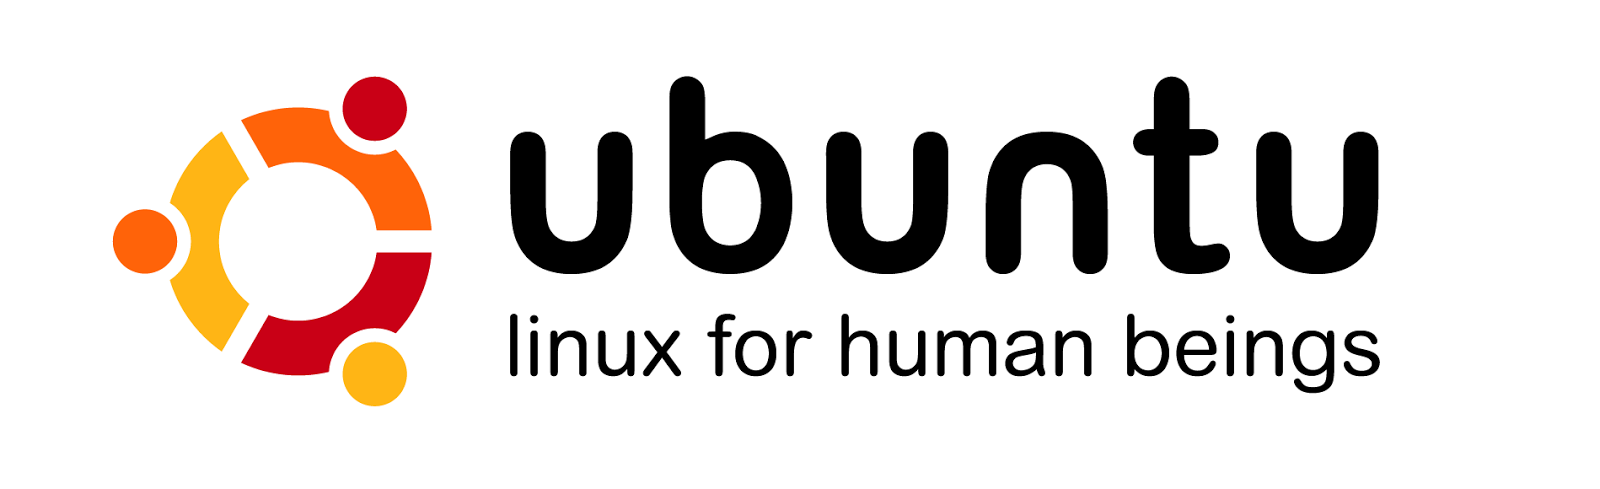 Ubuntu - Linux for Human beings